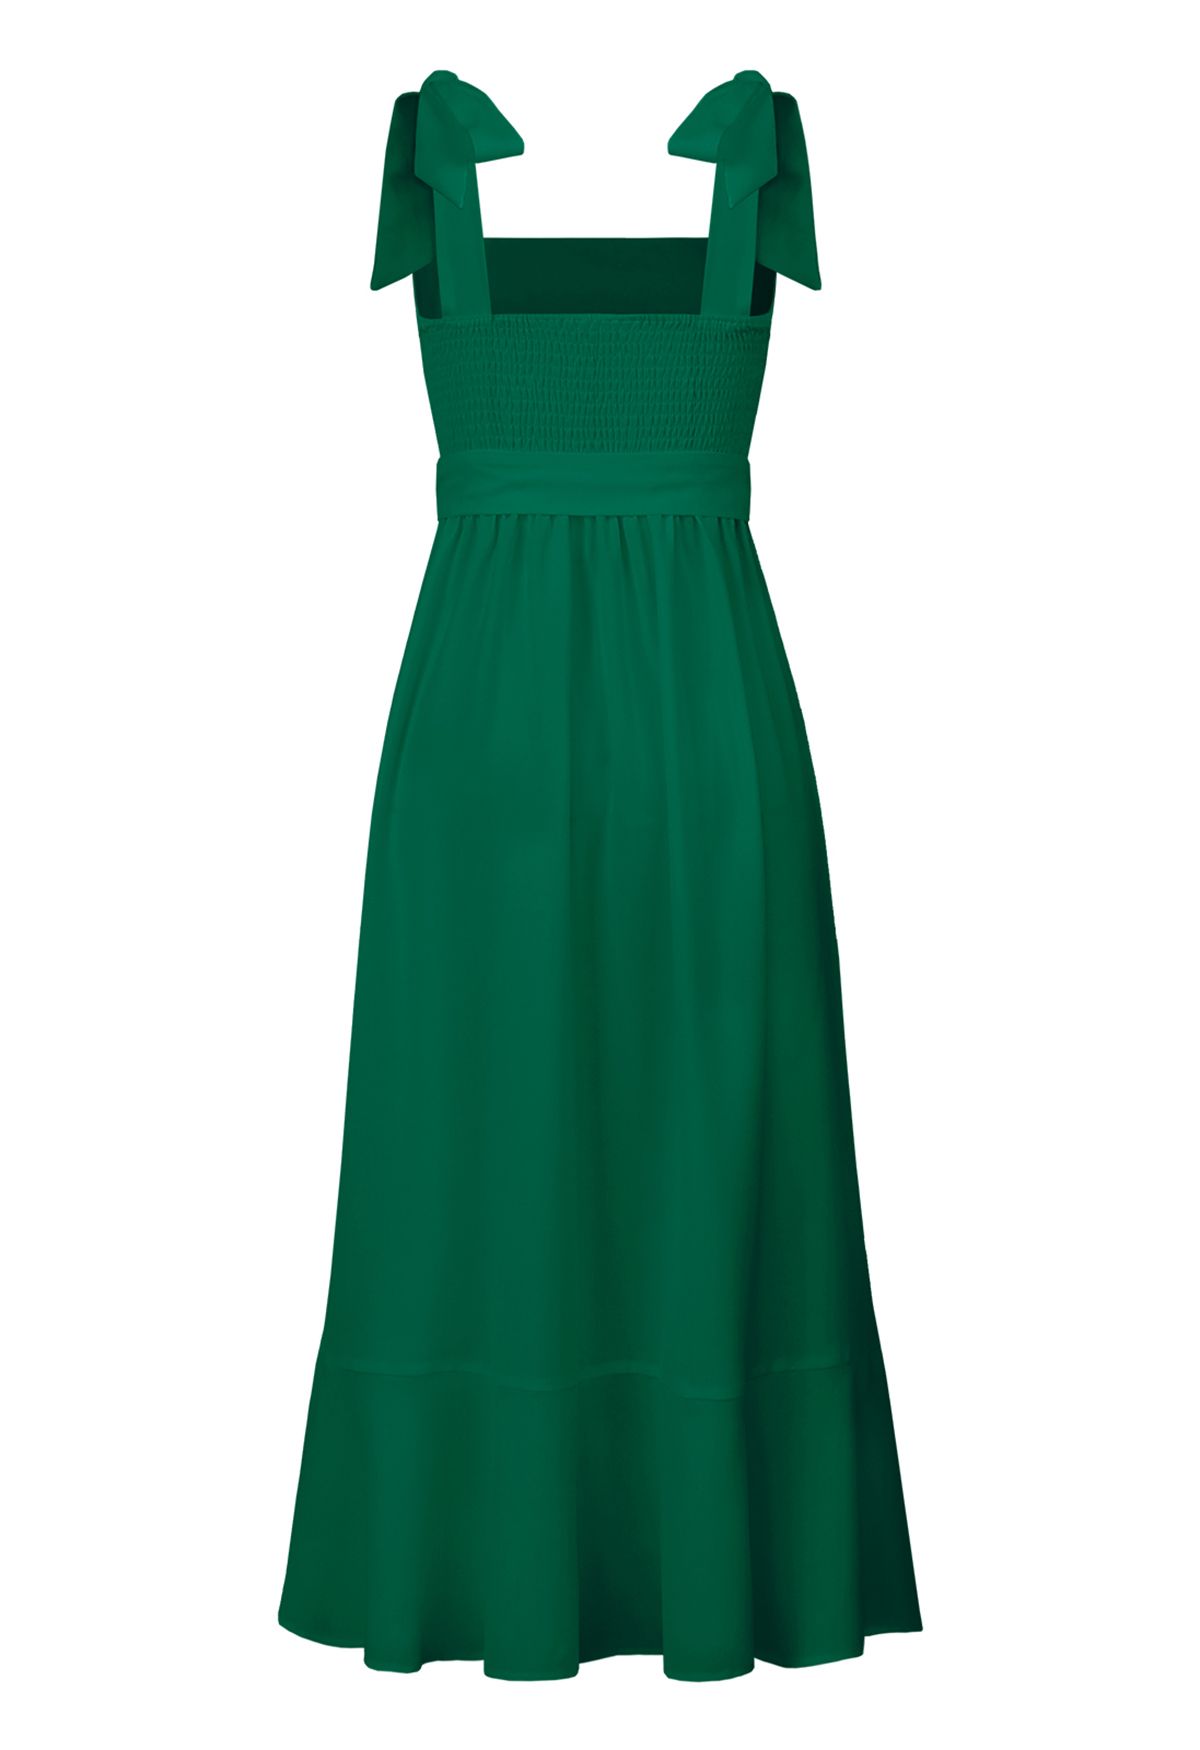 فستان قصير بحافة مكشكشة ورباط على الكتف باللون الأخضر